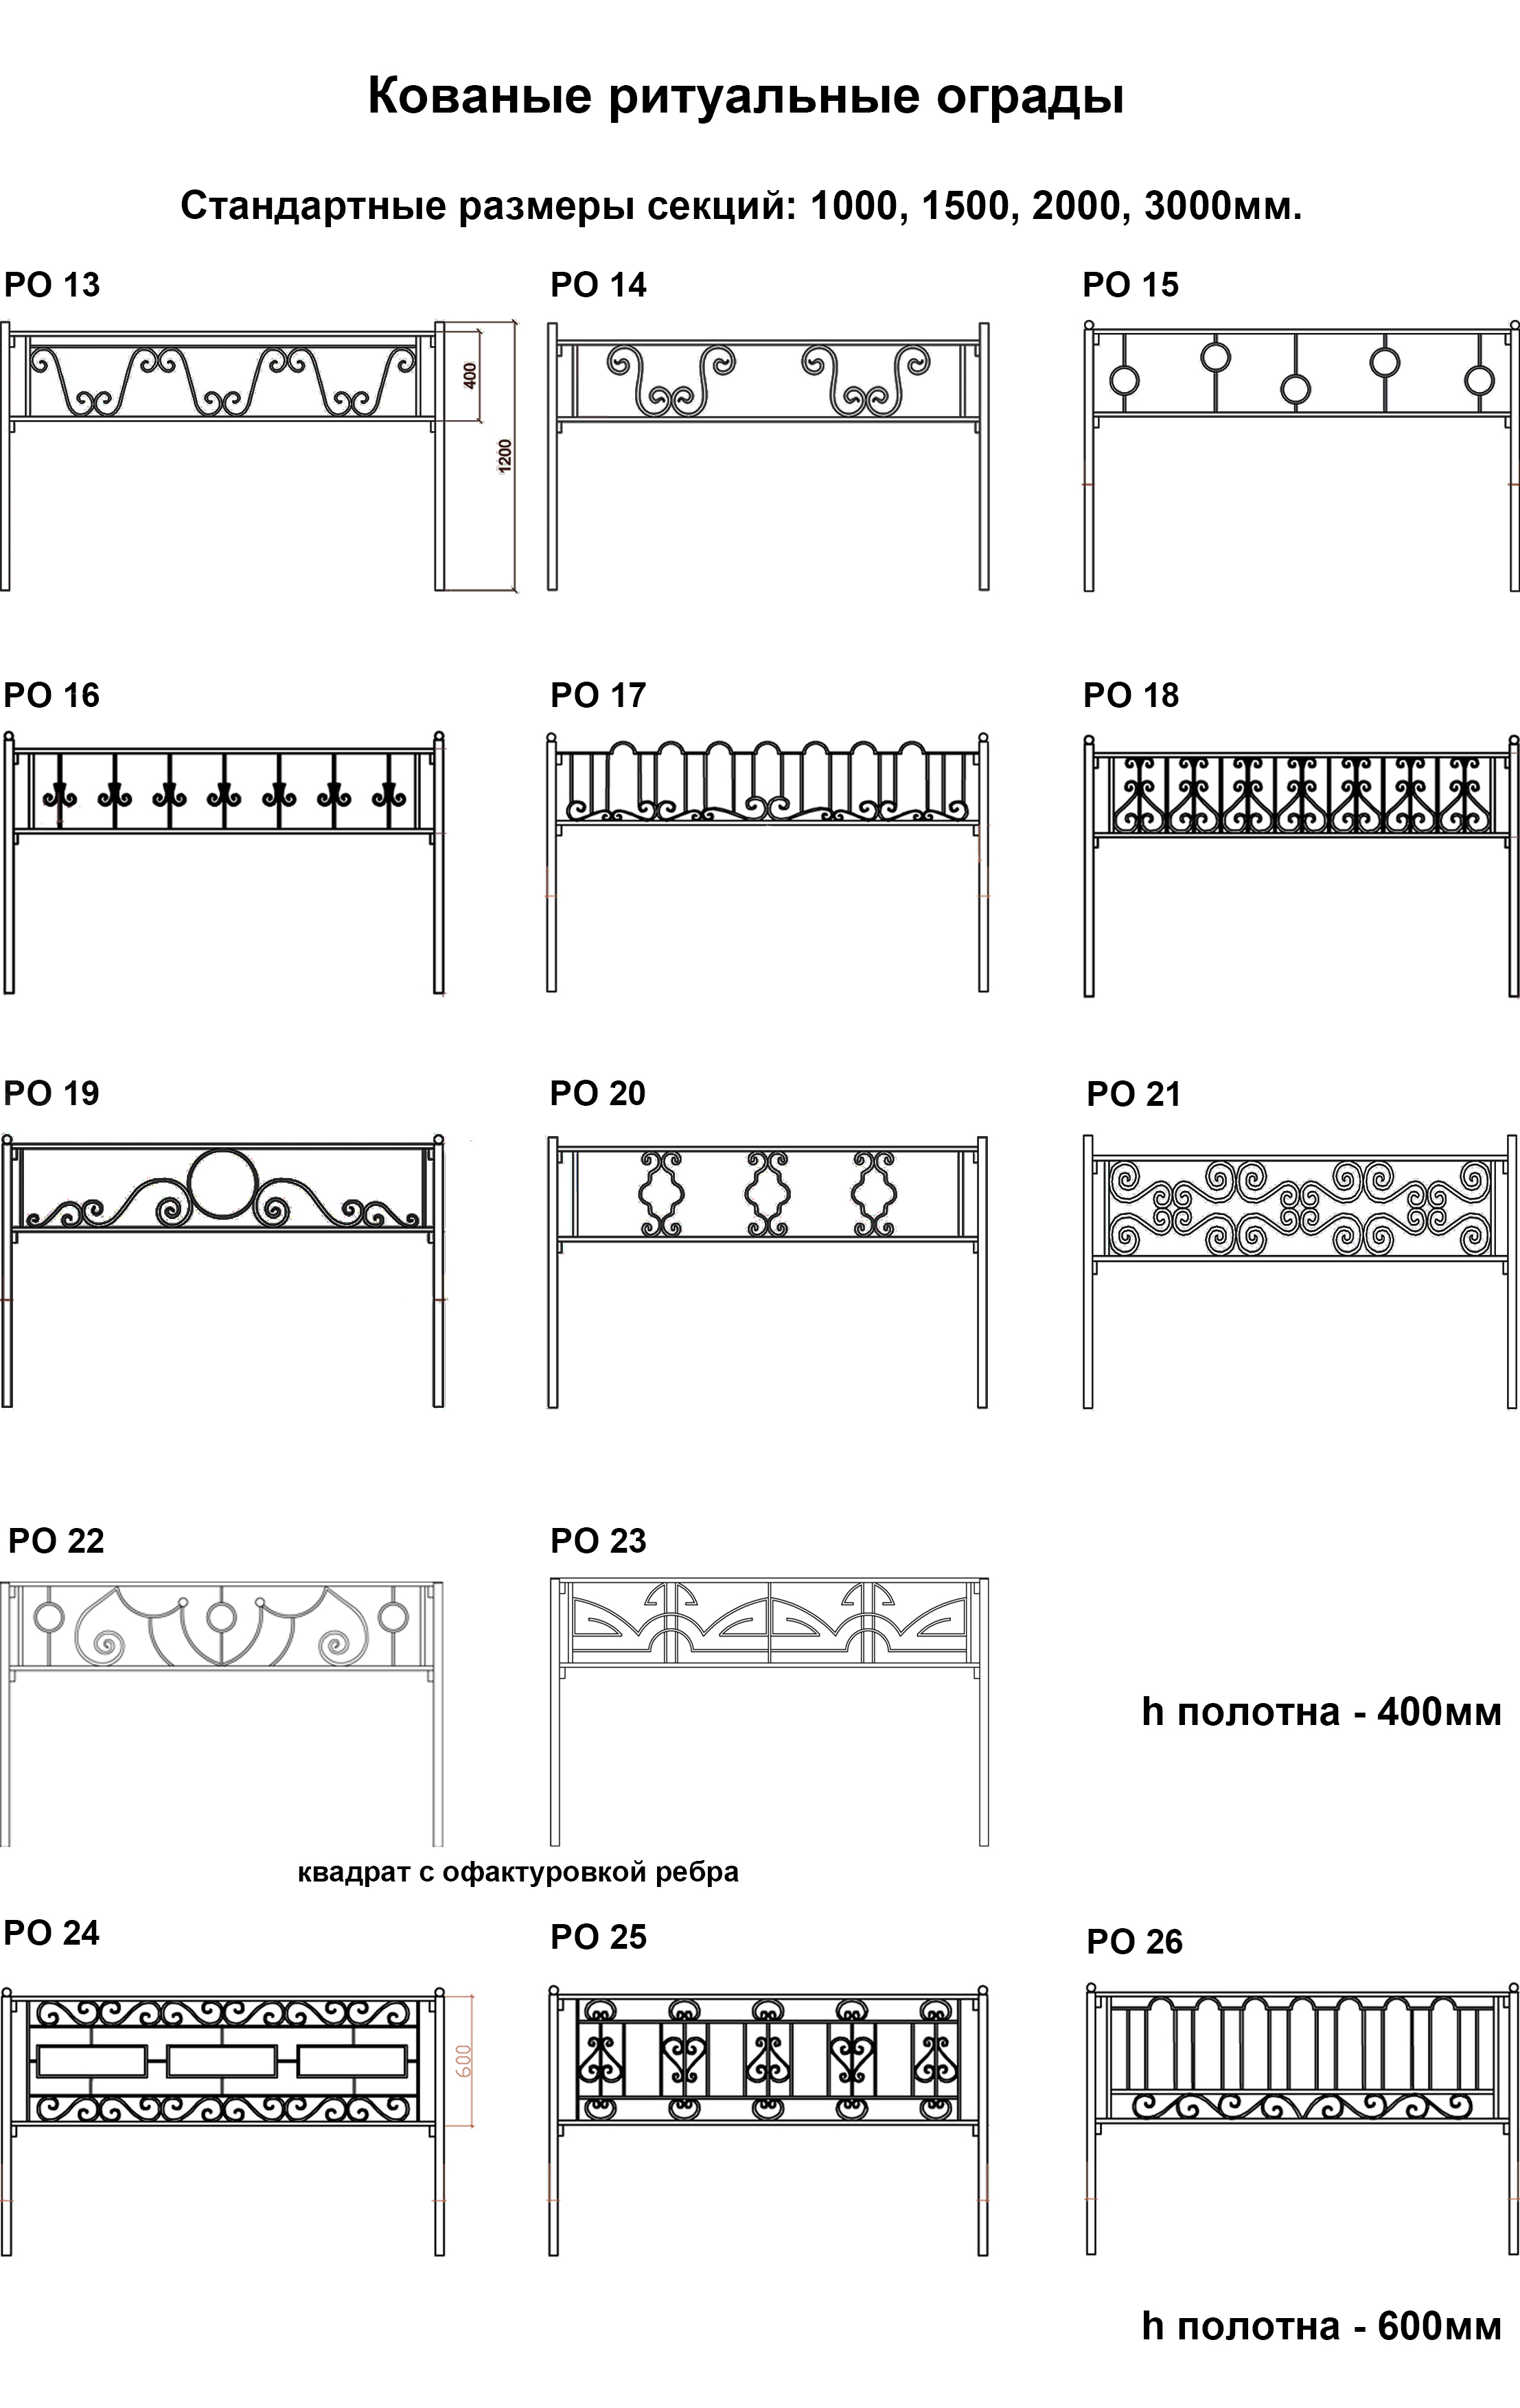 Ритуальные оградки с элементами ковки от СНК - типовые решения